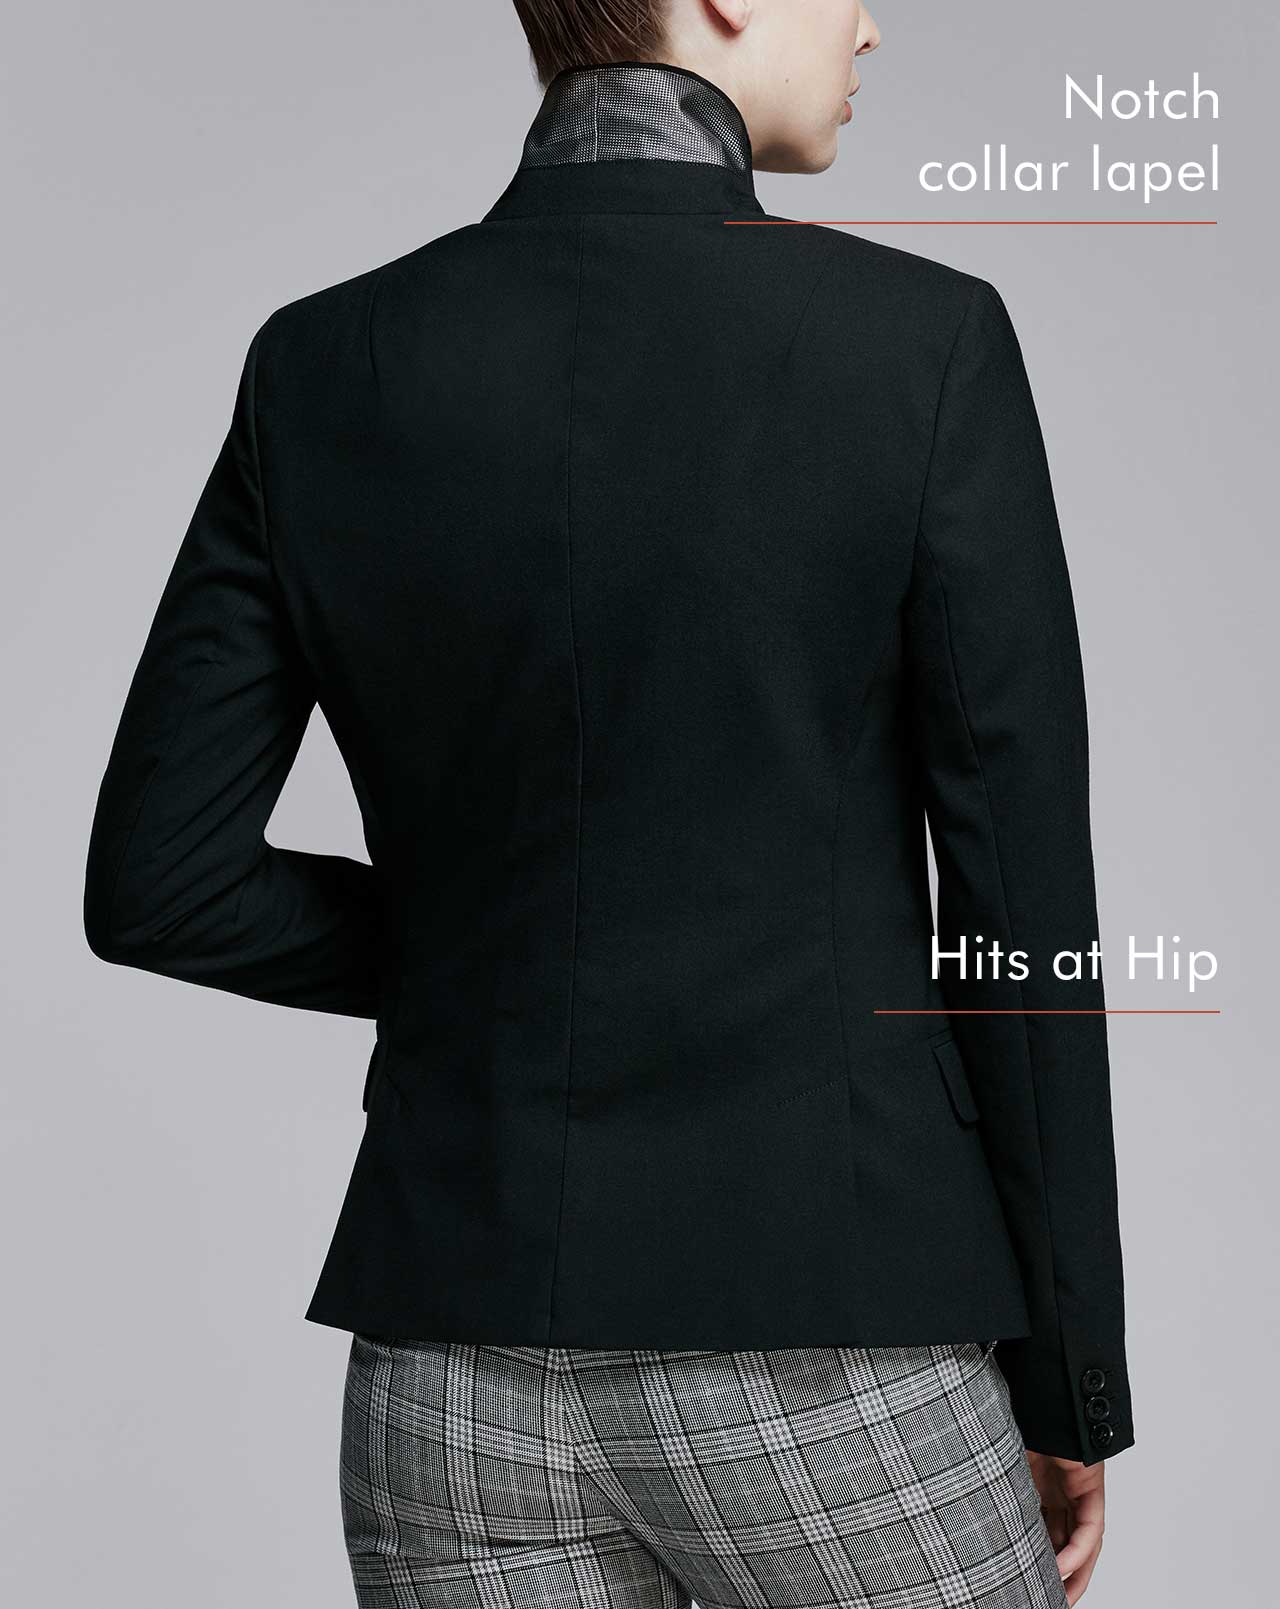 classic blazer fit side